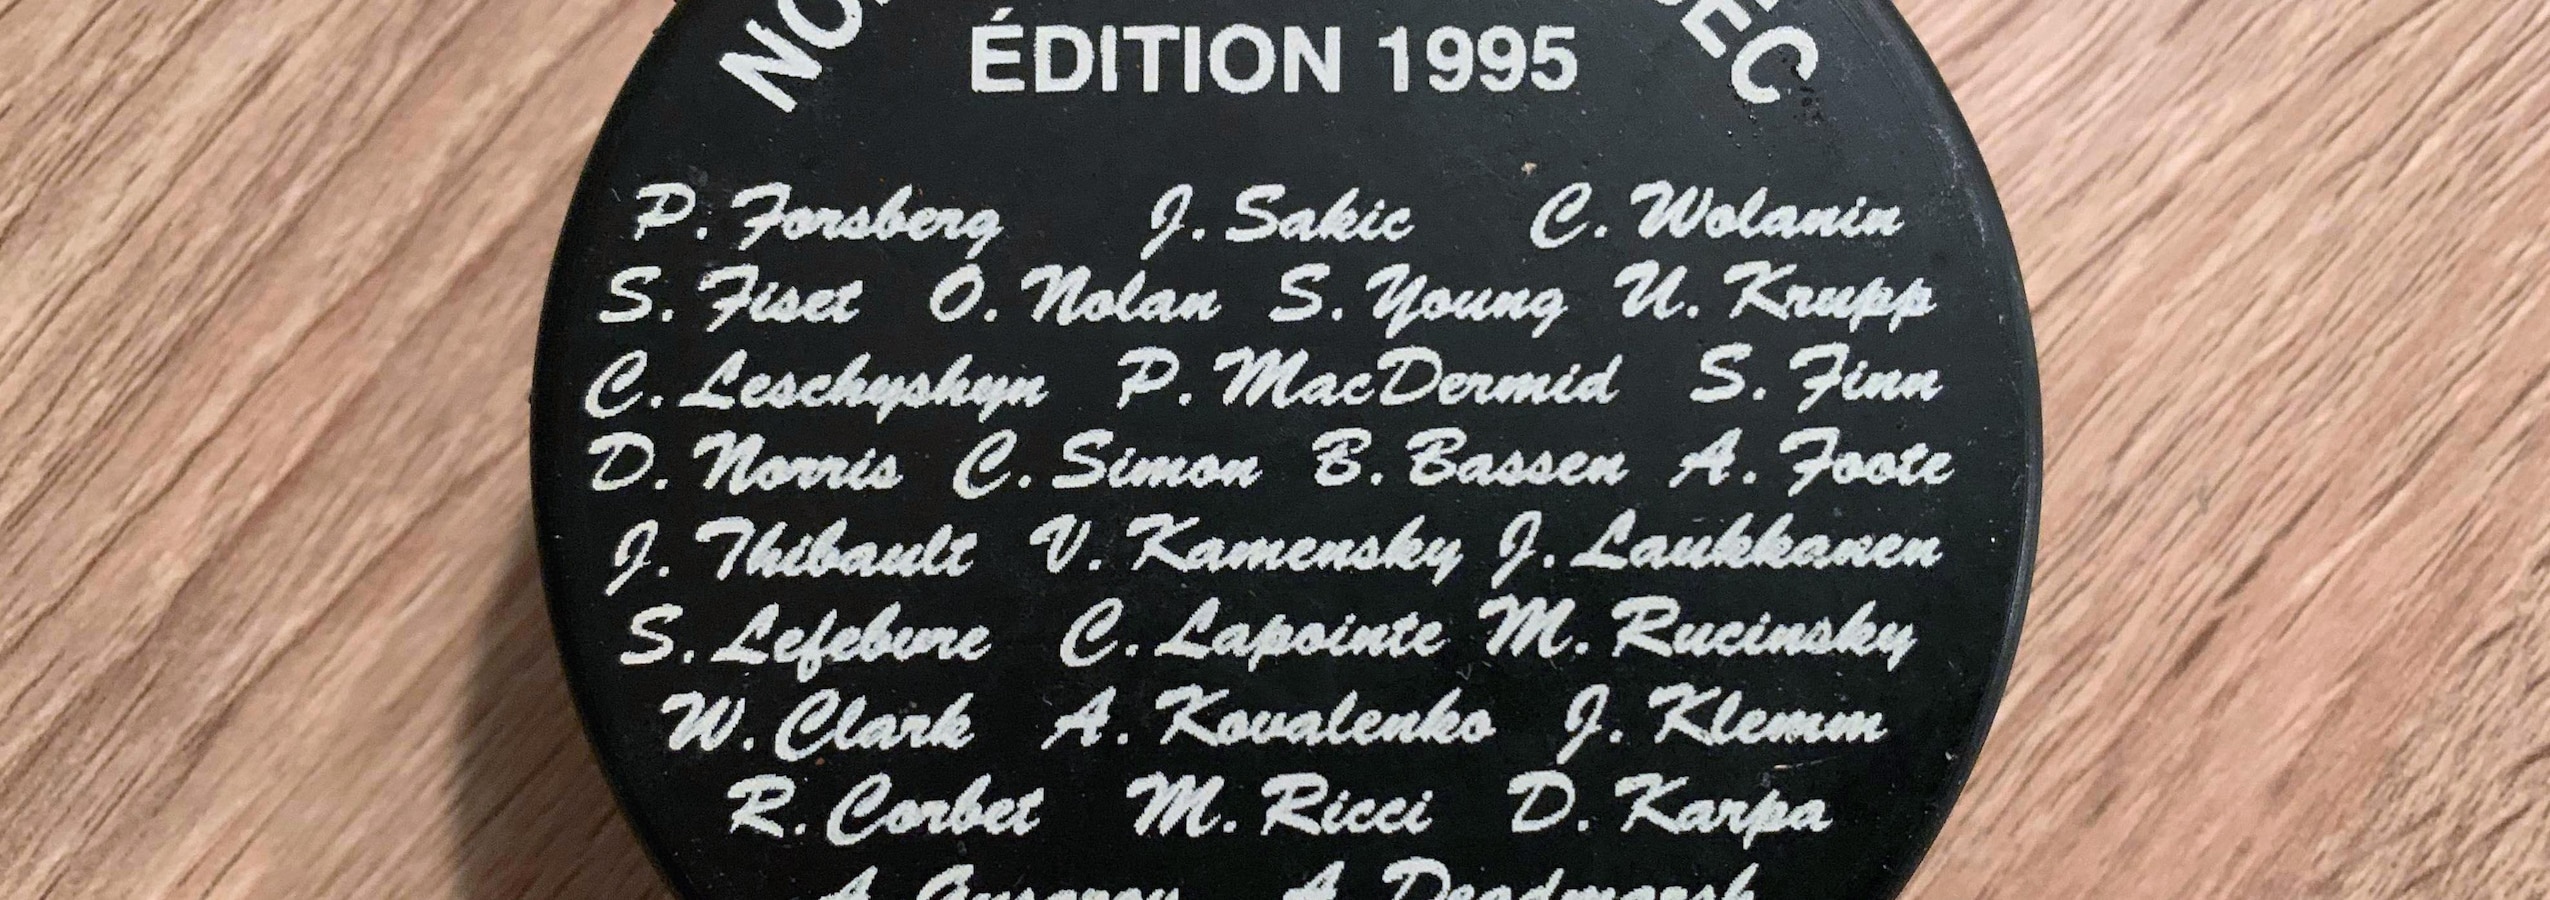 Les noms des joueurs apparaissent sur une rondelle de hockey.